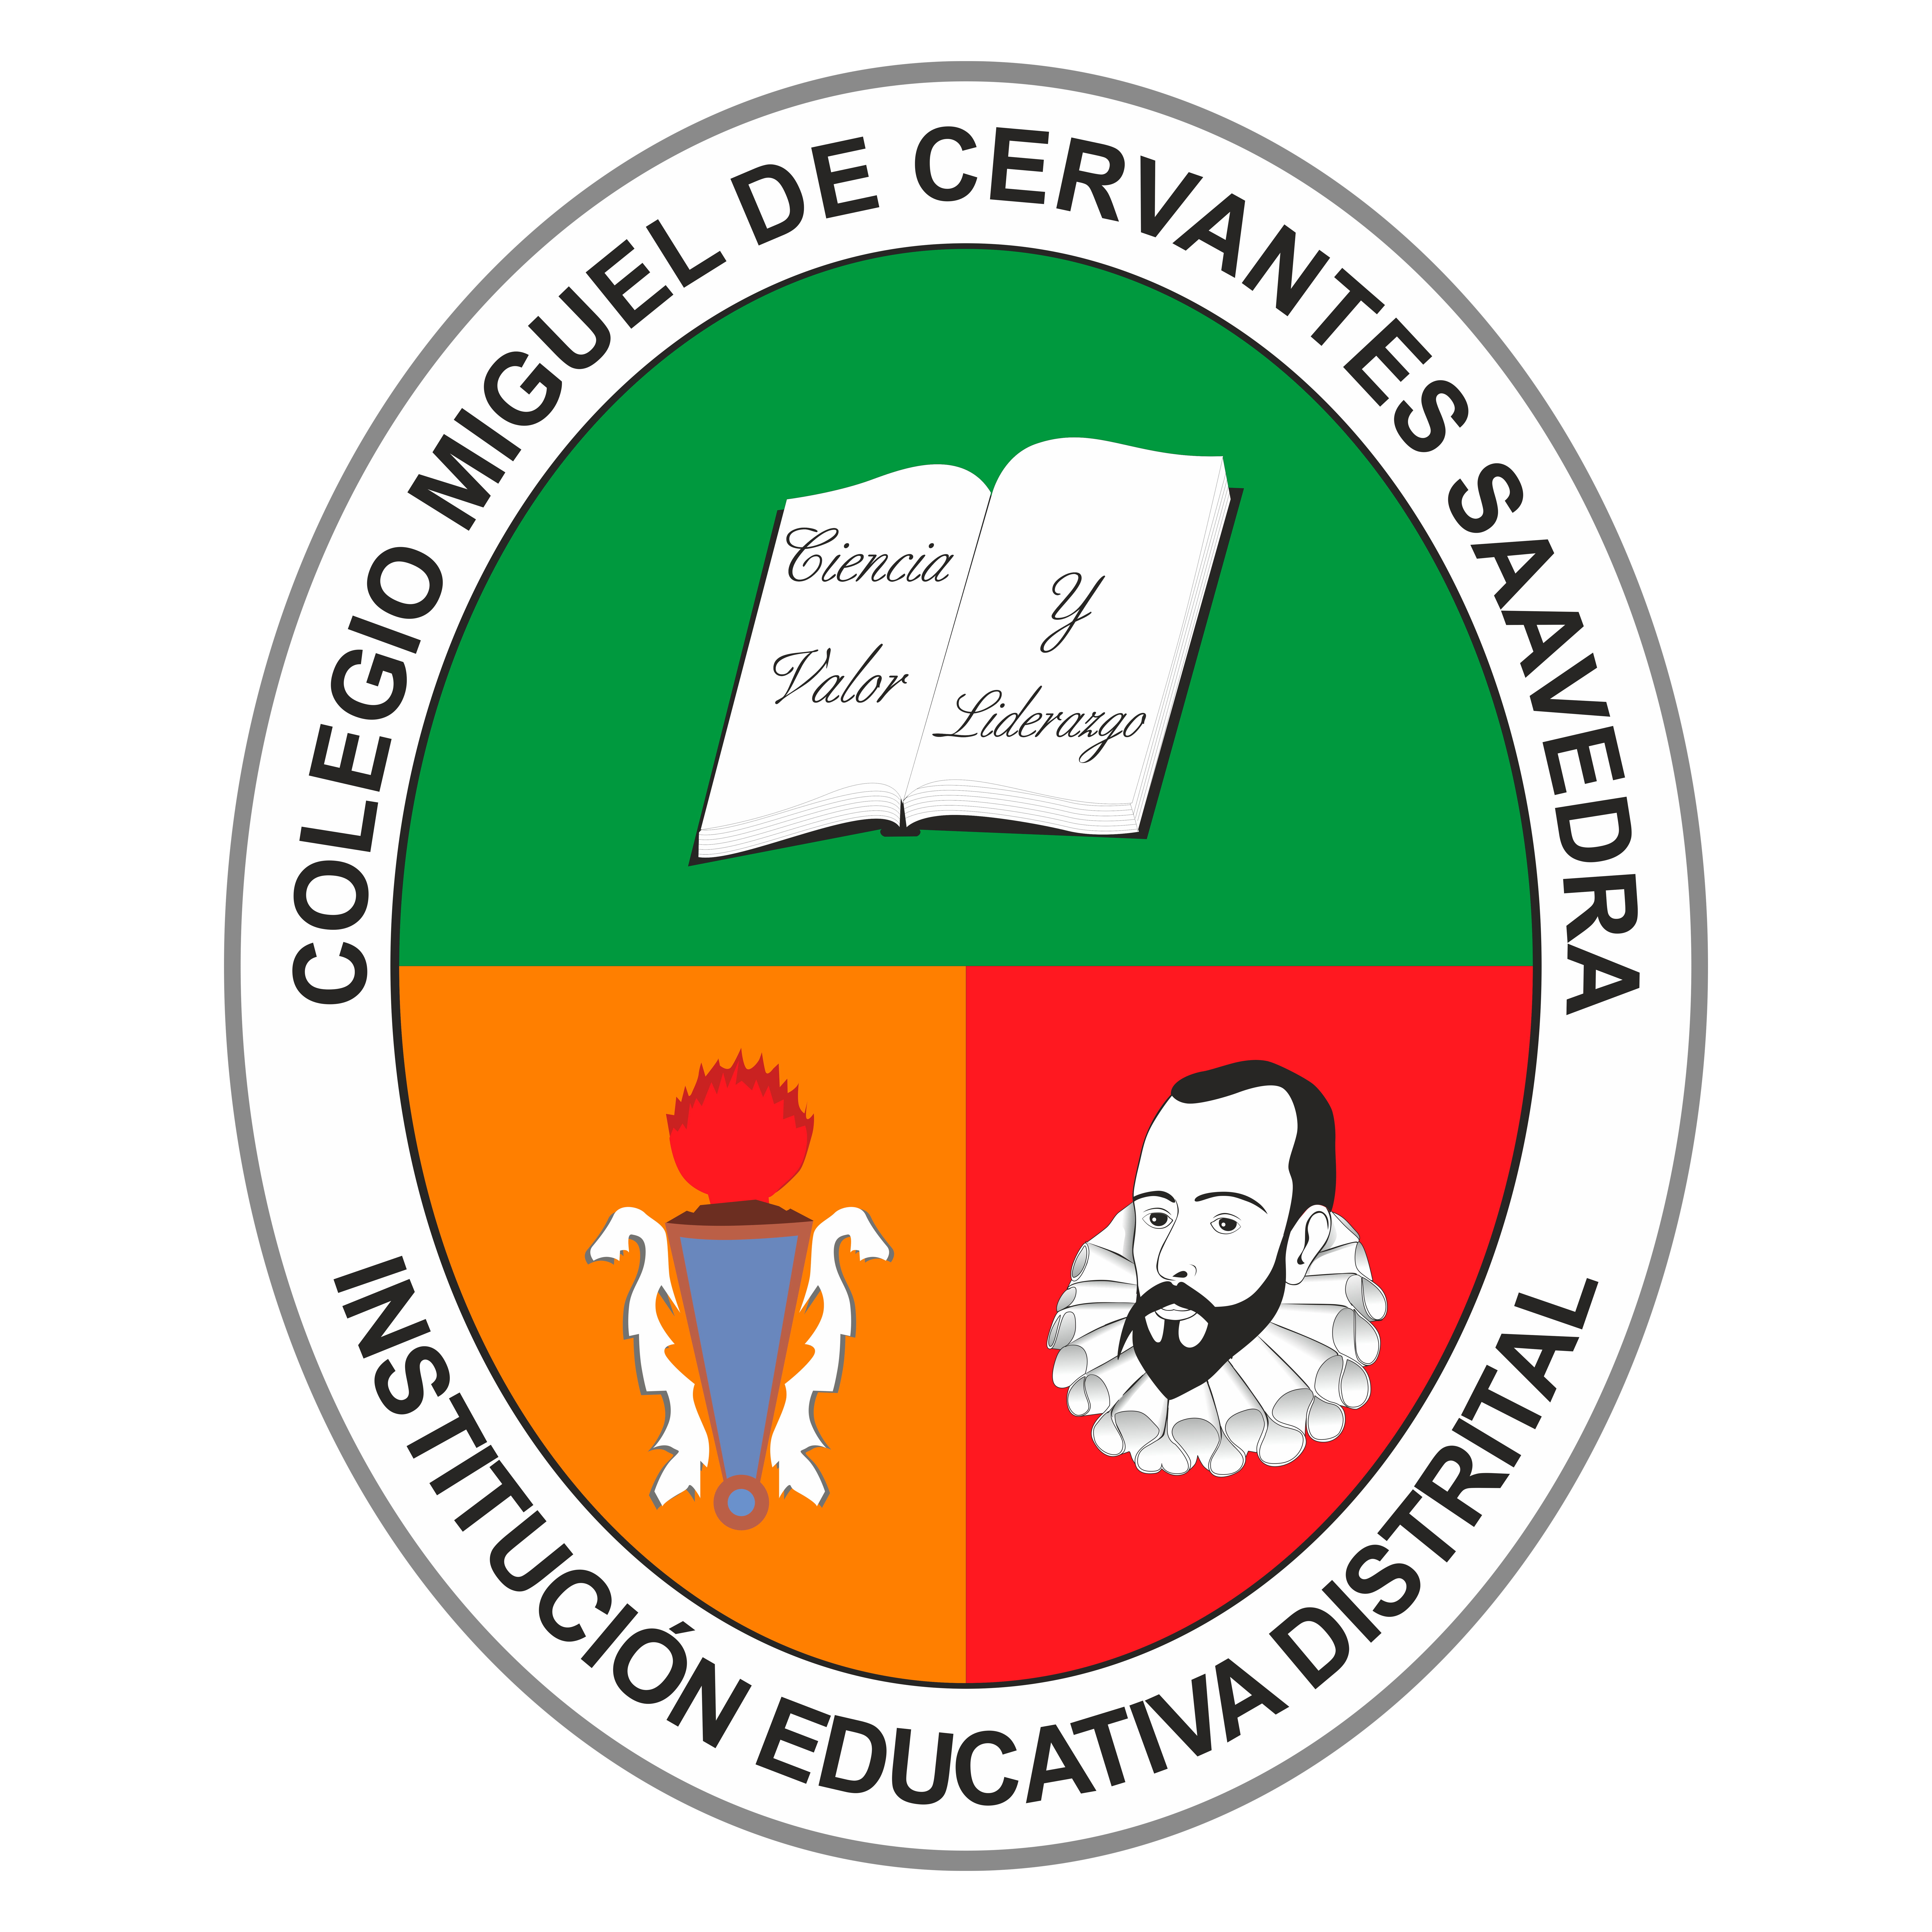 Escudo colegio Miguel de Cervantes Saavedra